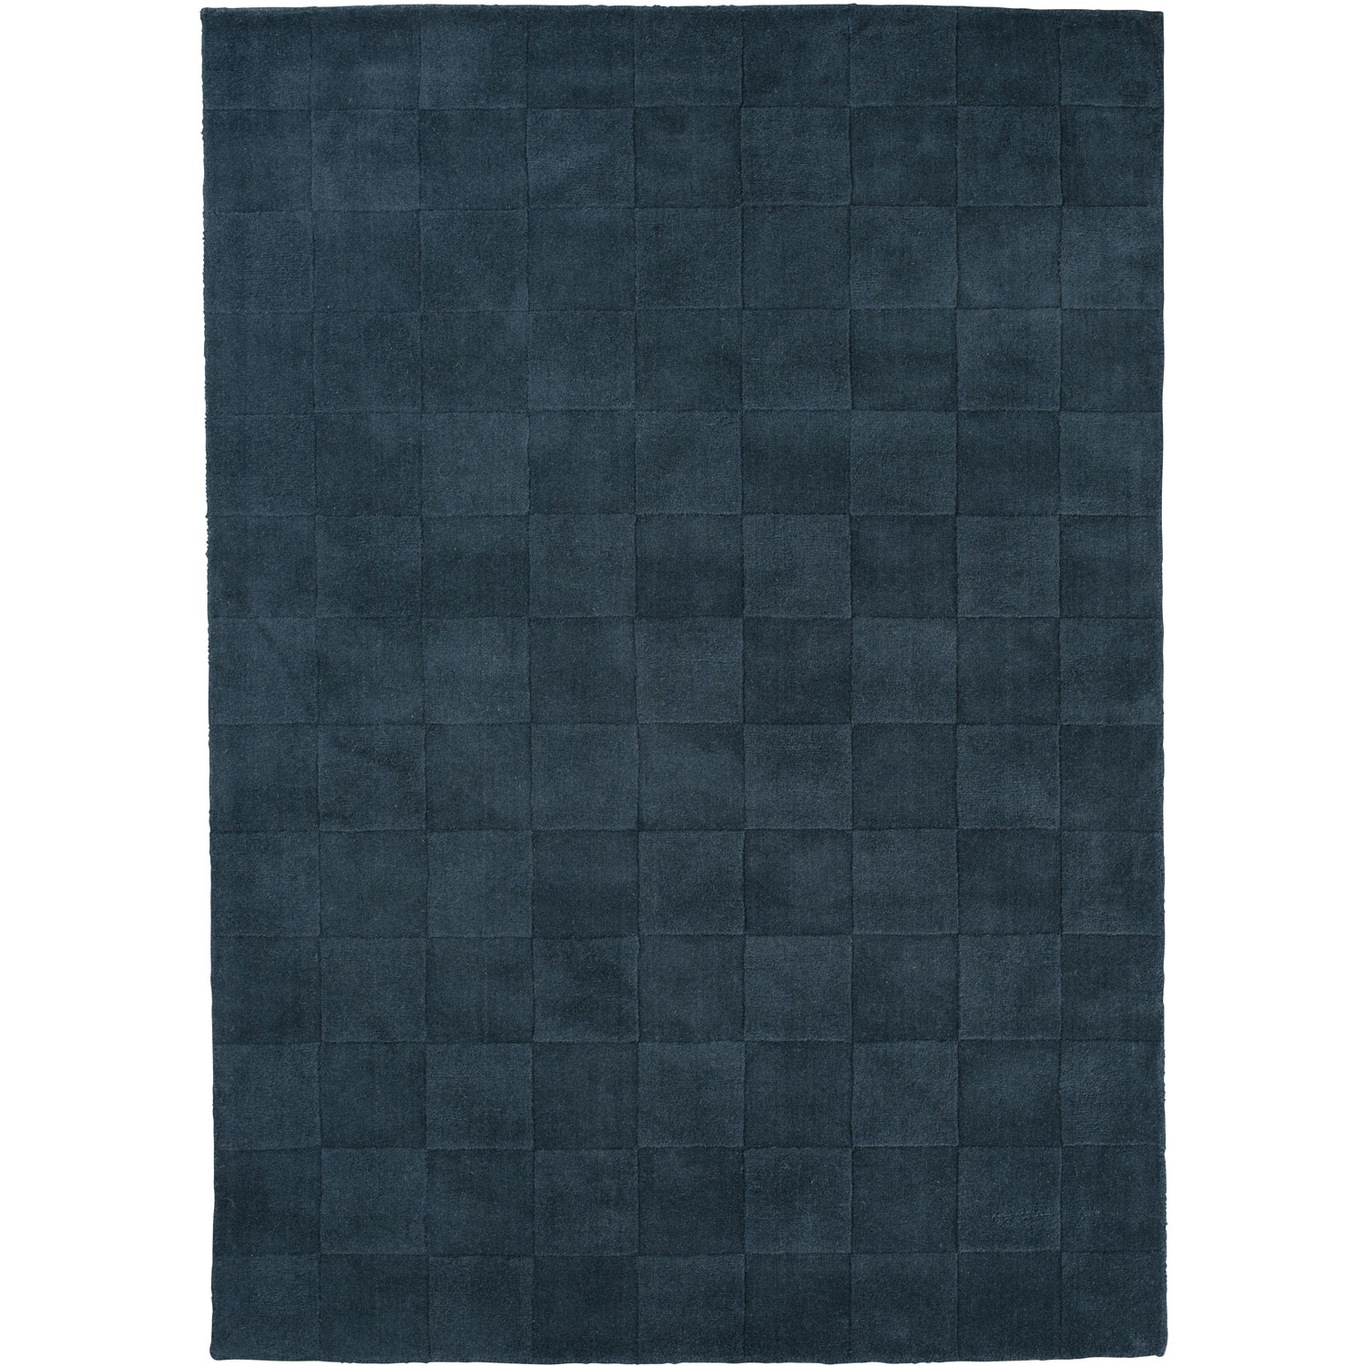 Luzern Teppich Slate, 170x240 cm